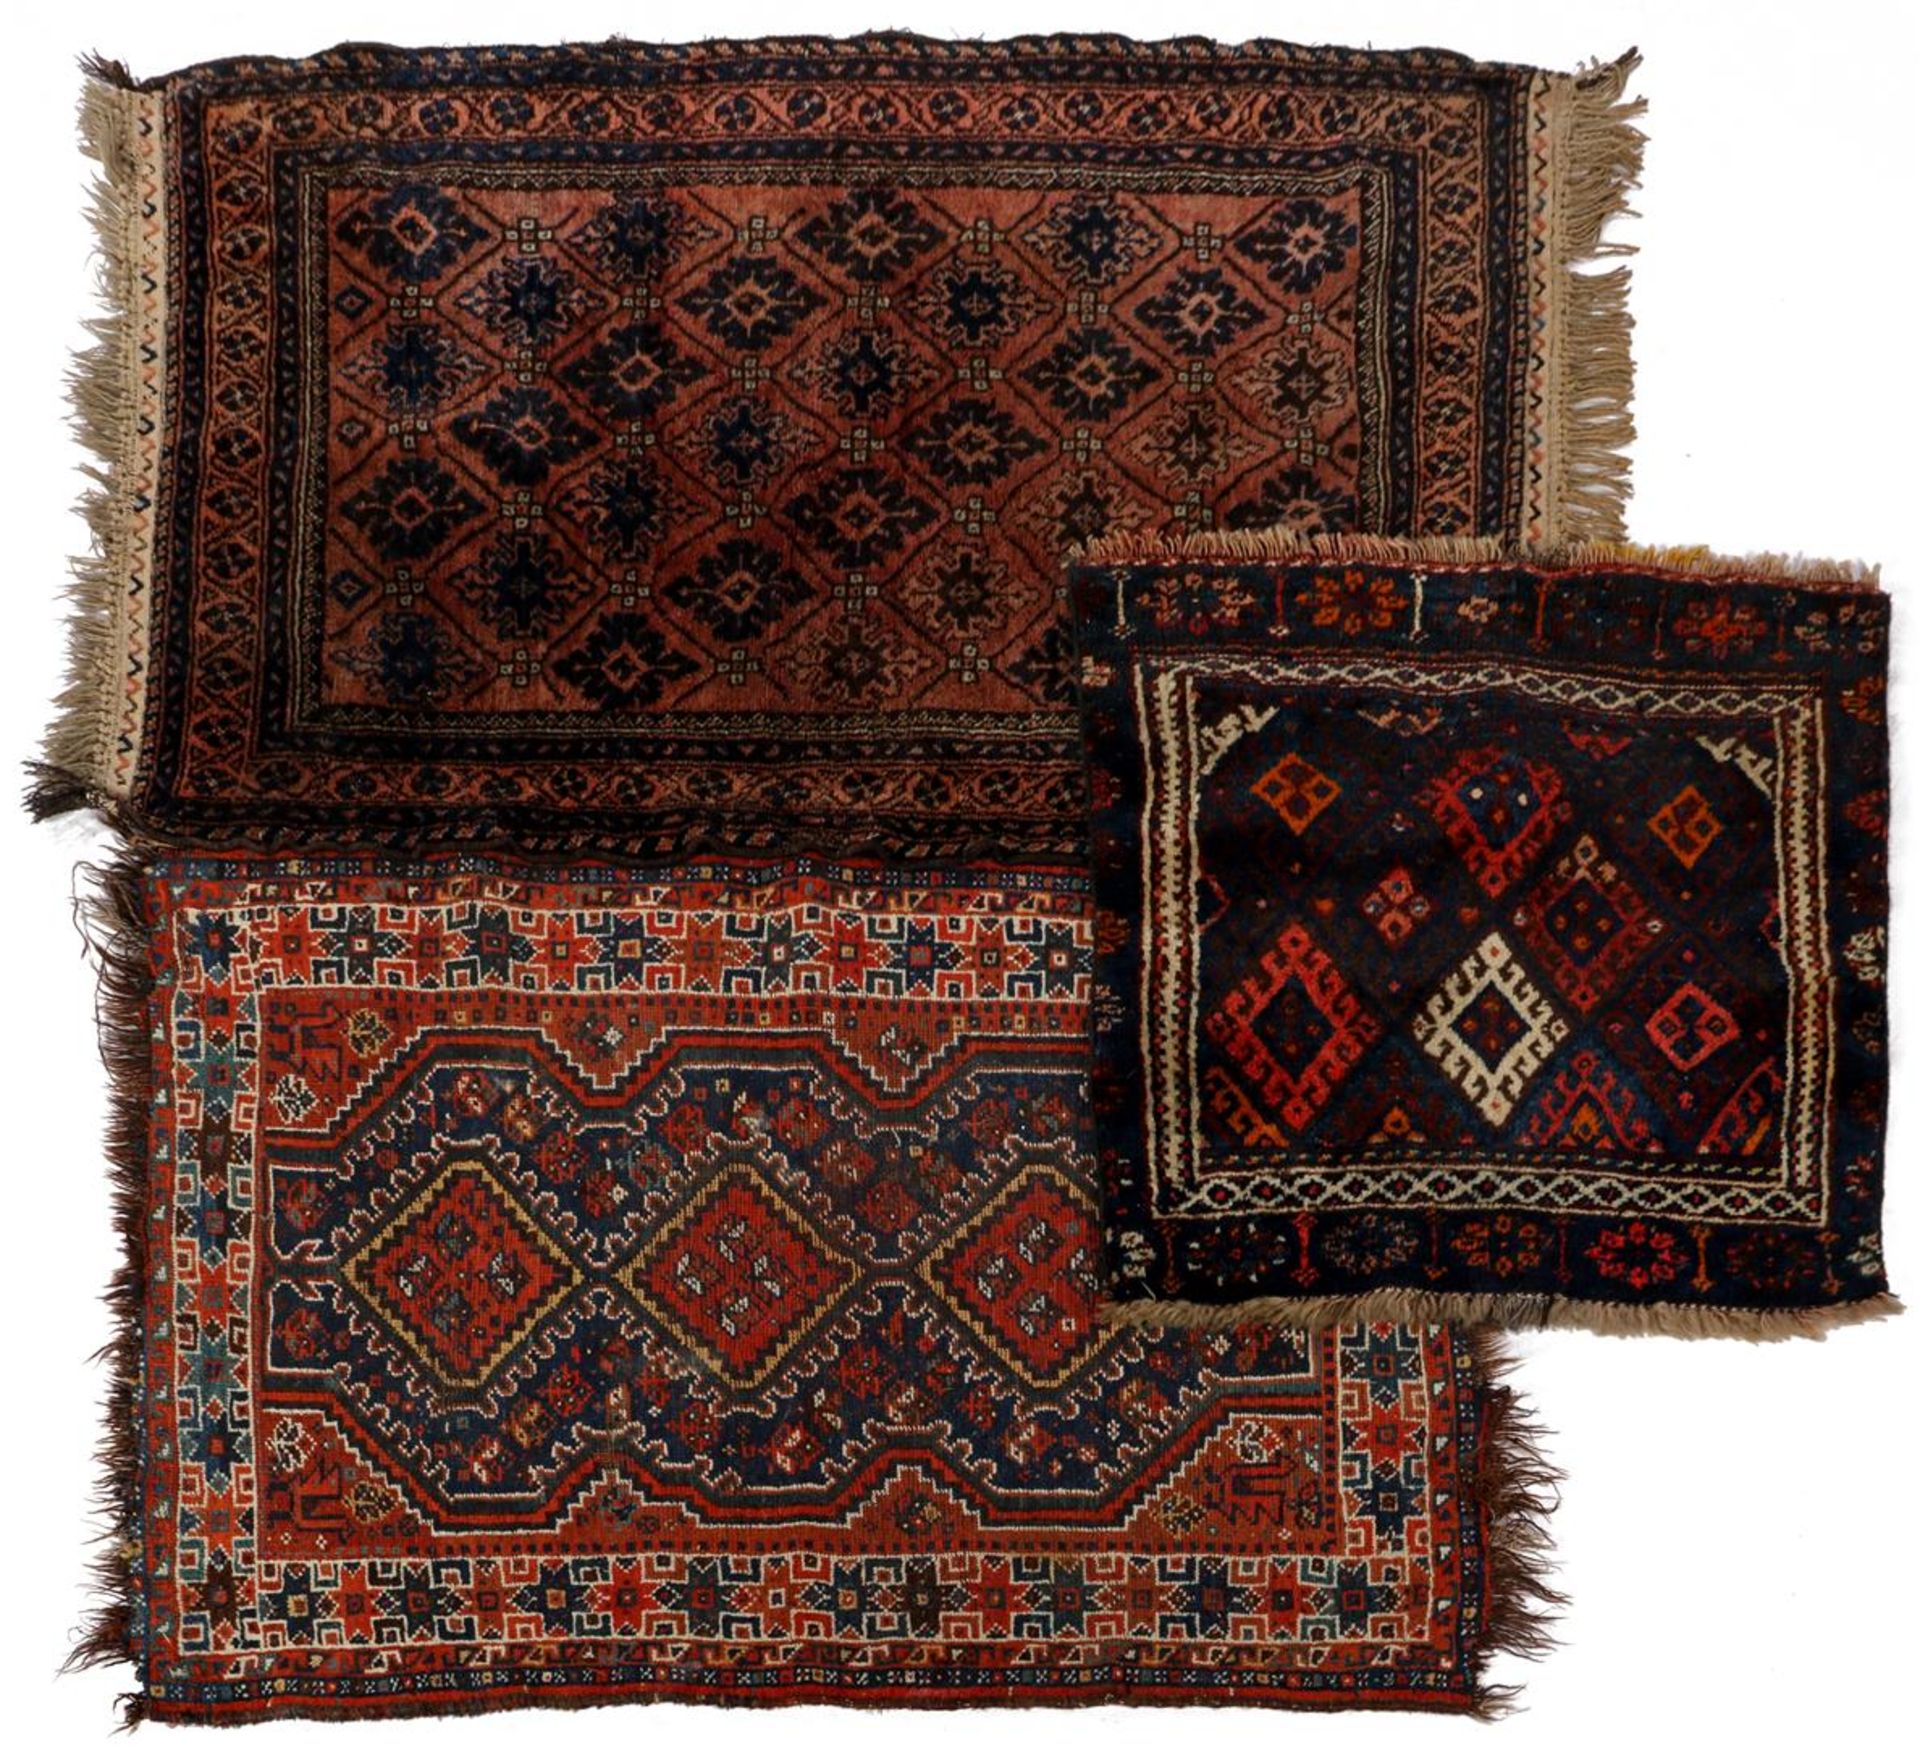 2 wool rugs with oriental motif